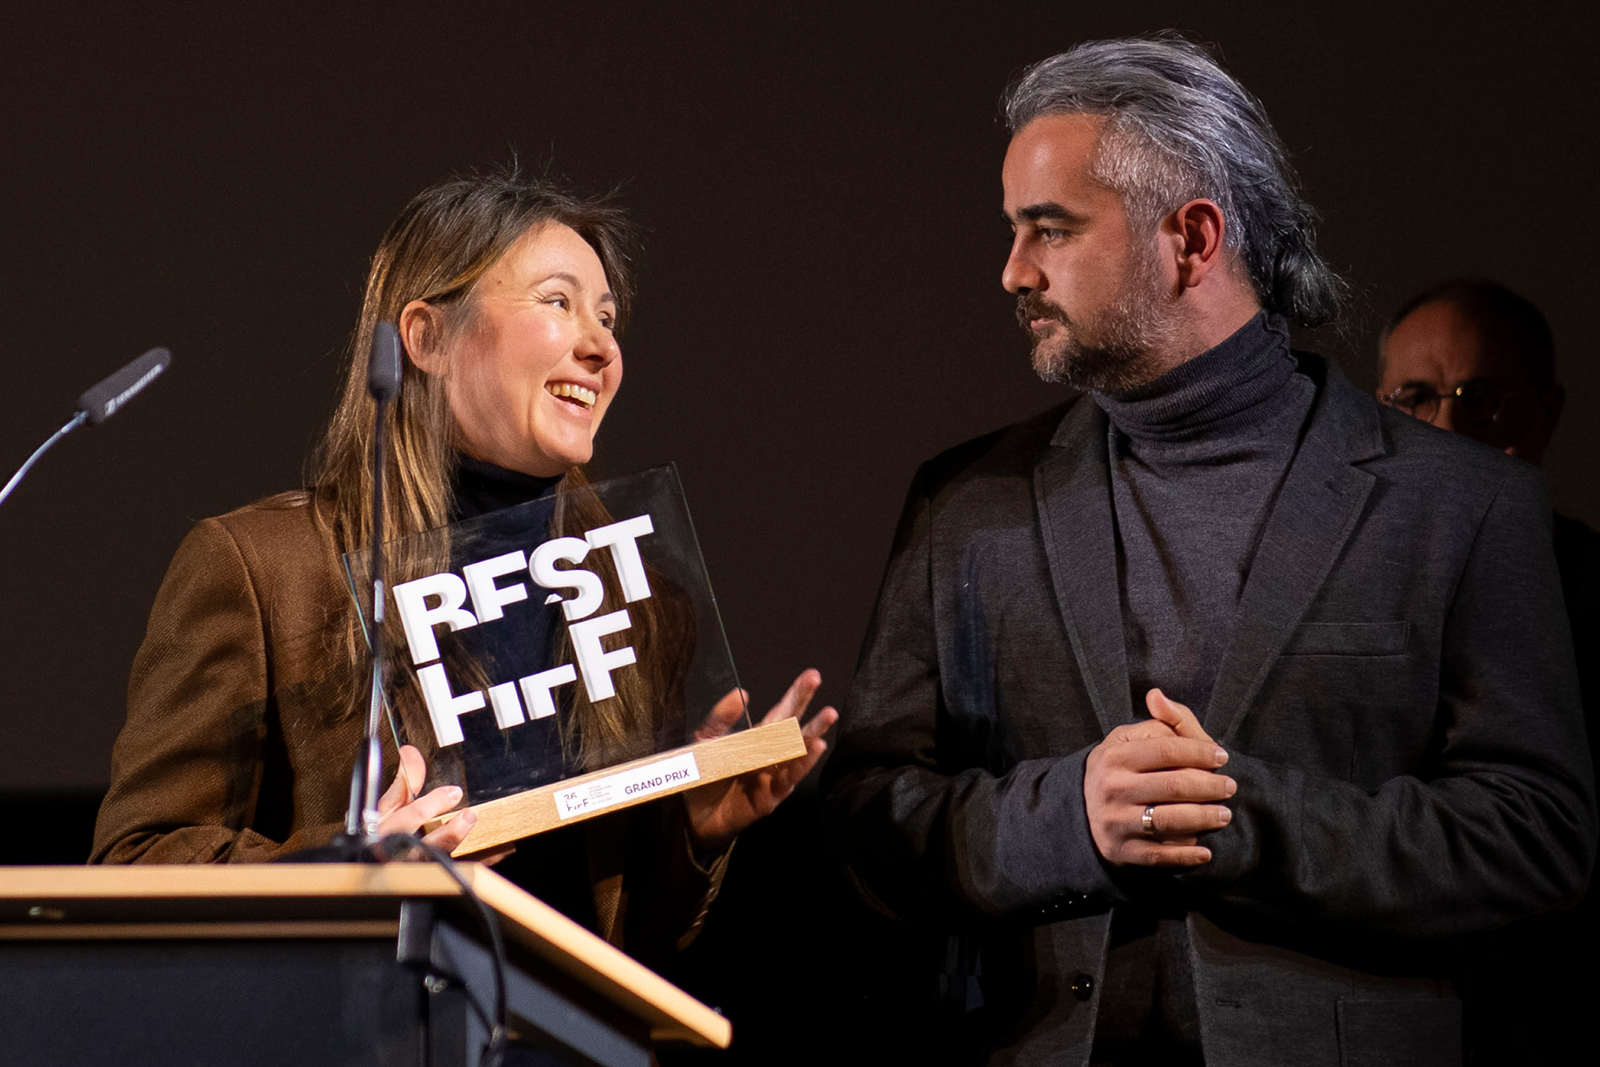 Le Grand Prix du FIFF récompense le meilleur long métrage en compétition. ©Thomas Delley/FIFF 2022